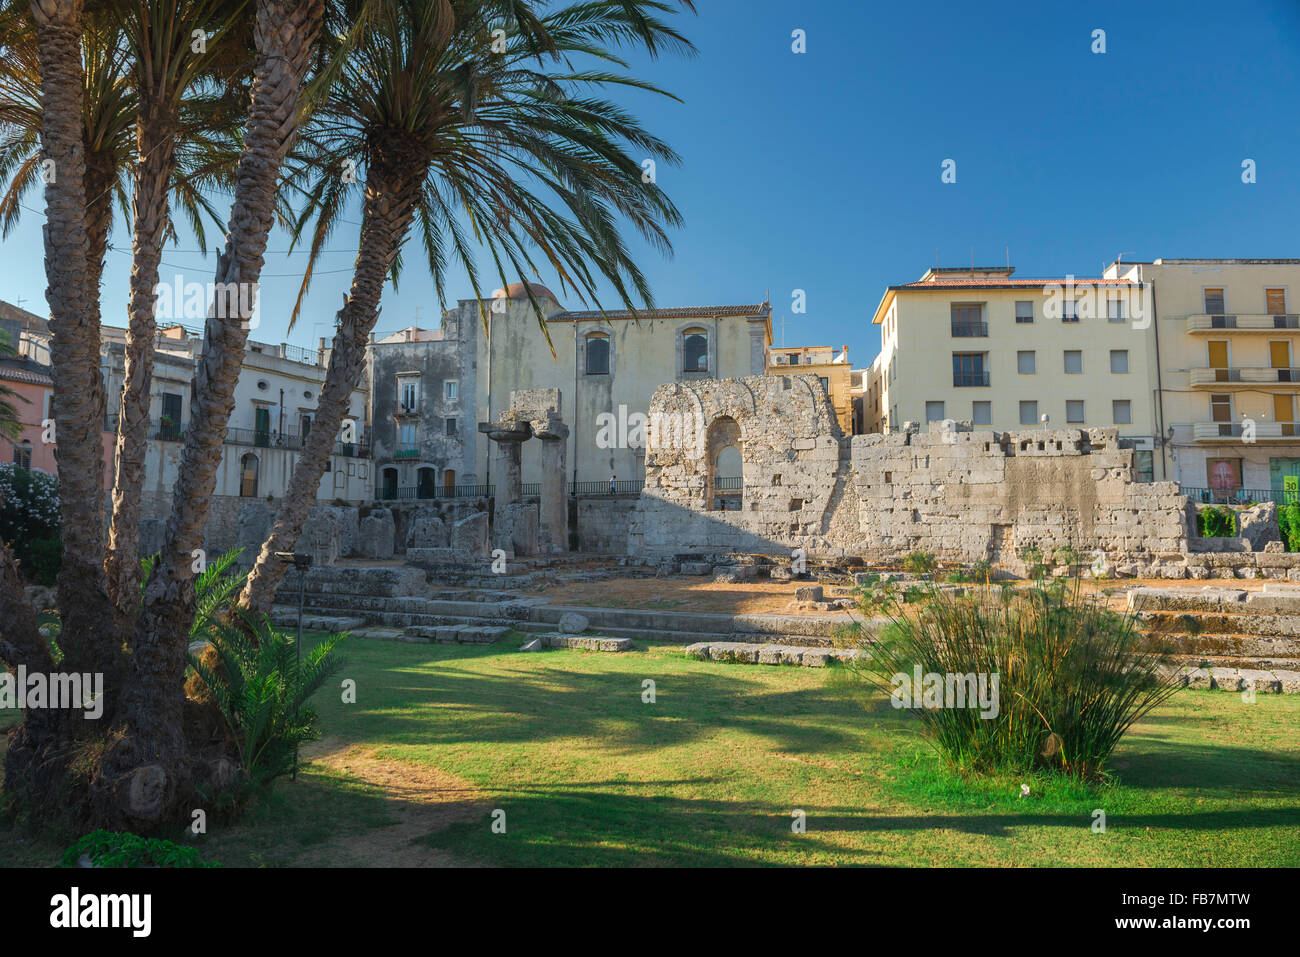 Siracusa Sicilia rovine greche, vista dei resti storici dell'antico tempio greco di Apollo nel centro dell'isola di Ortigia, Siracusa, Sicilia. Foto Stock